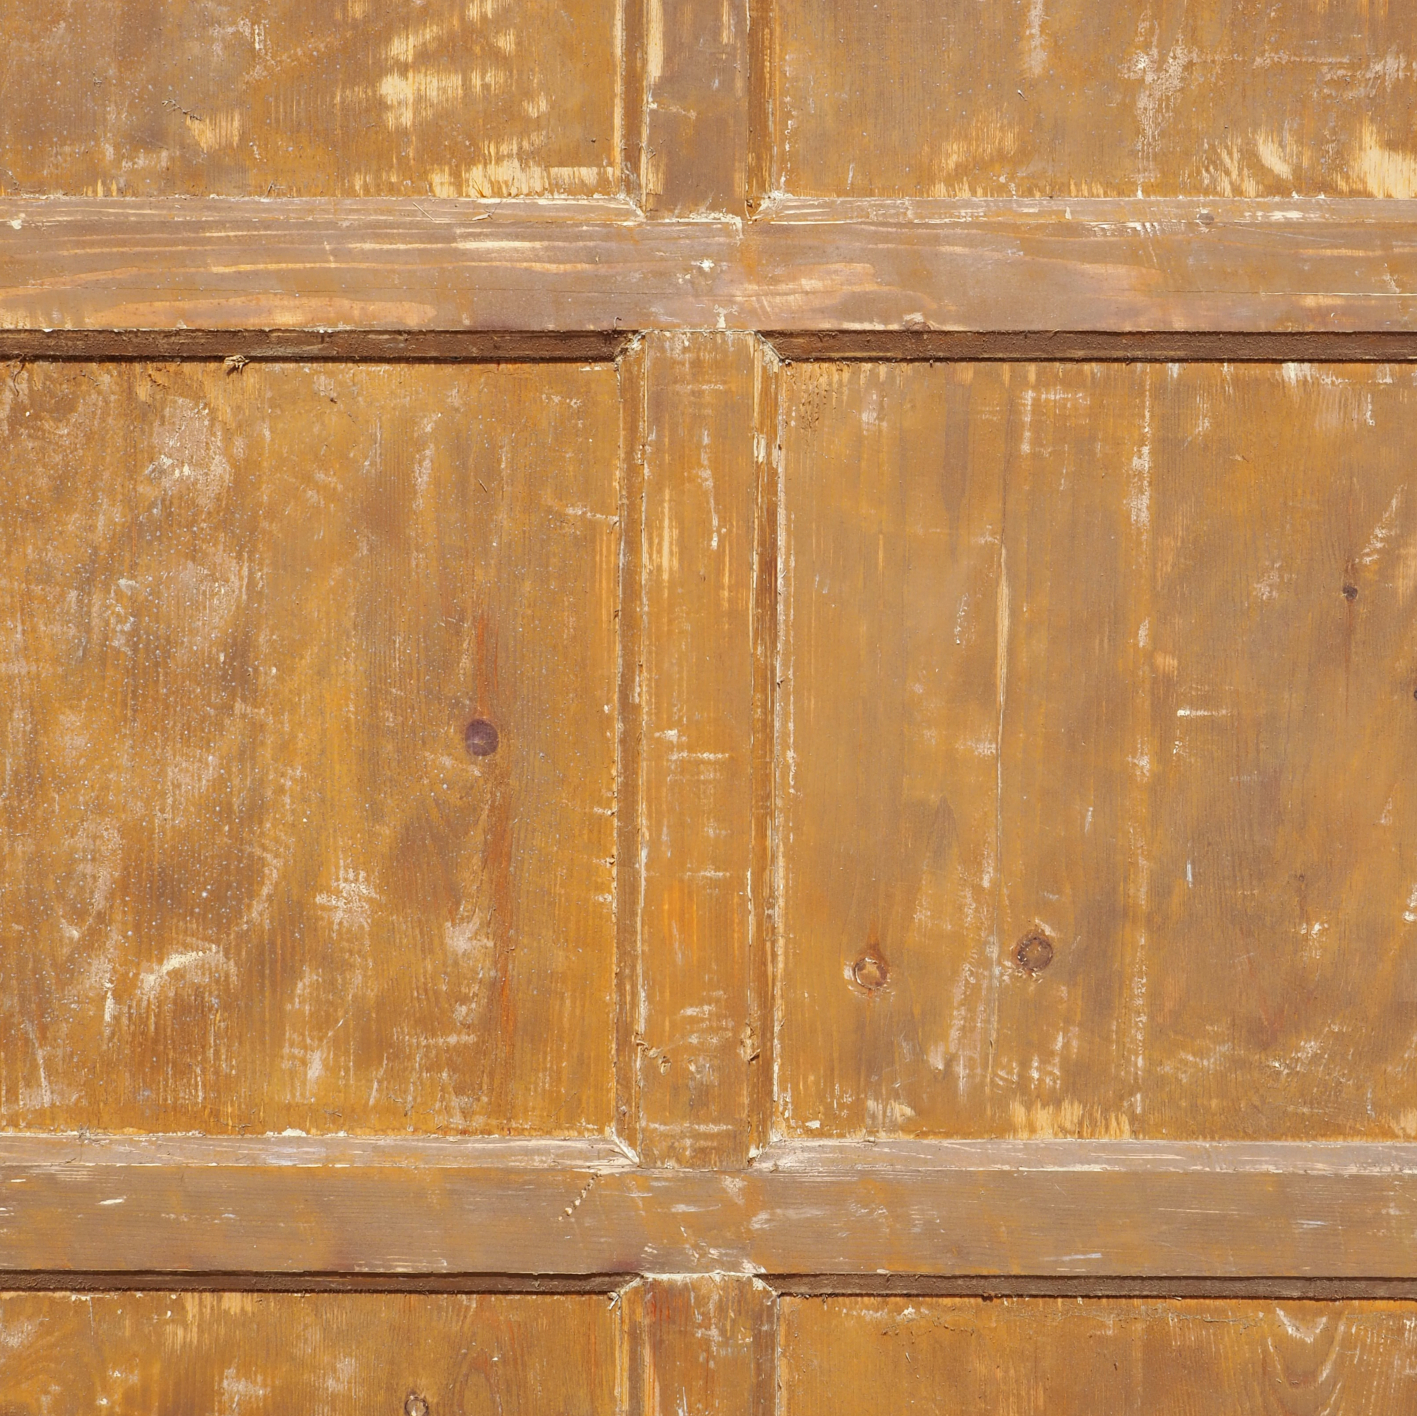 Wooden door (H. 202 x W. 81.5 cm) – Left